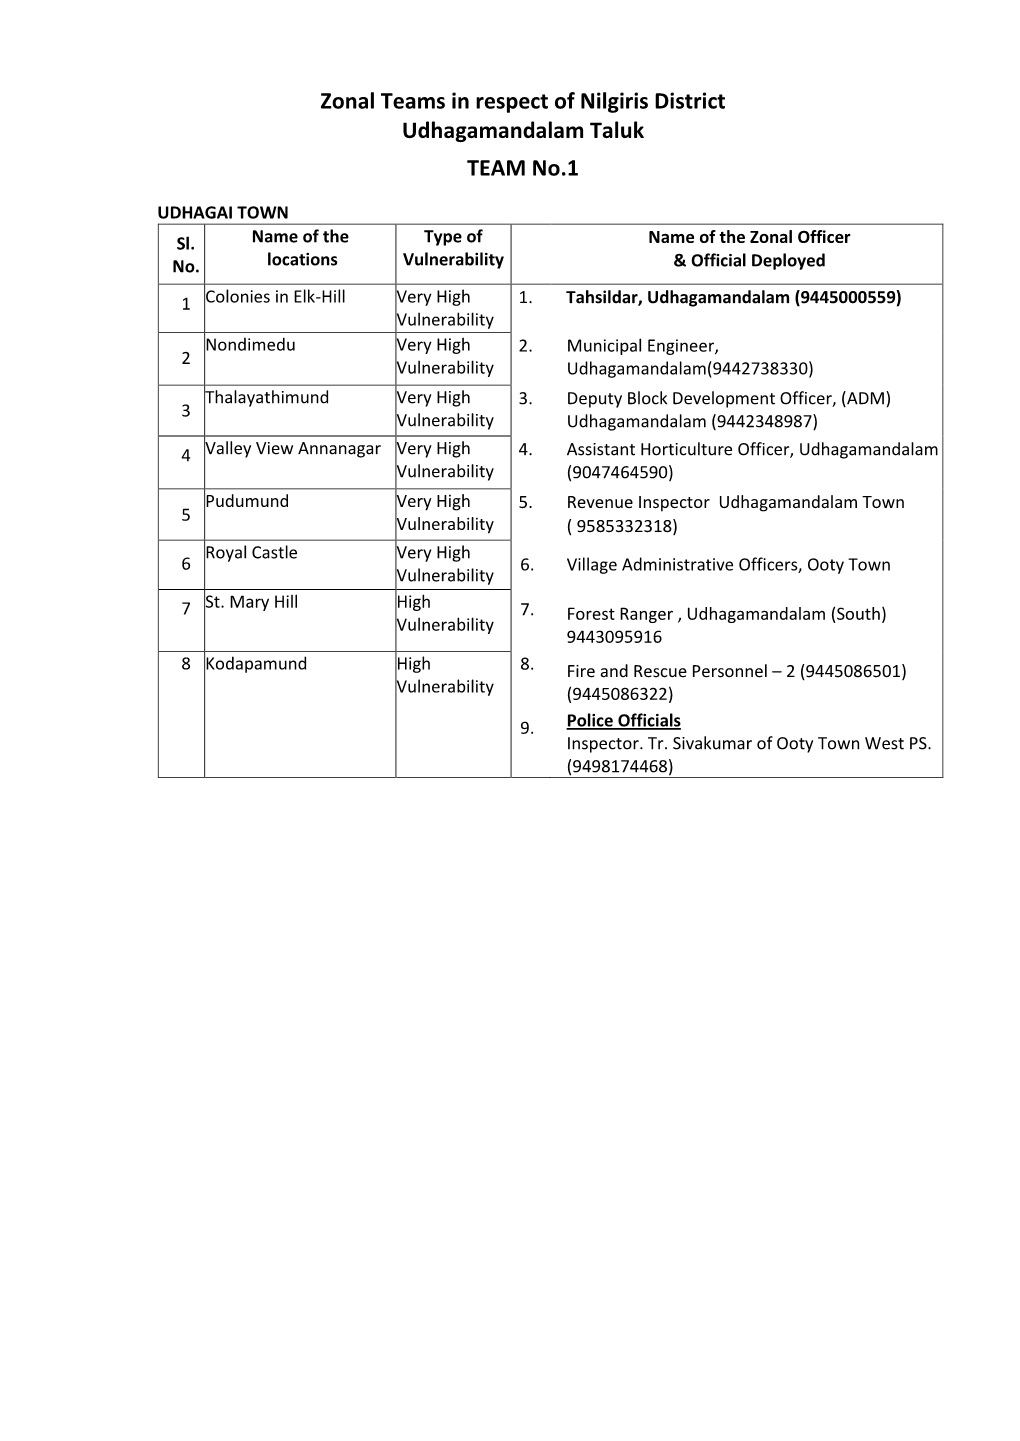 Zonal Teams in Respect of Nilgiris District Udhagamandalam Taluk